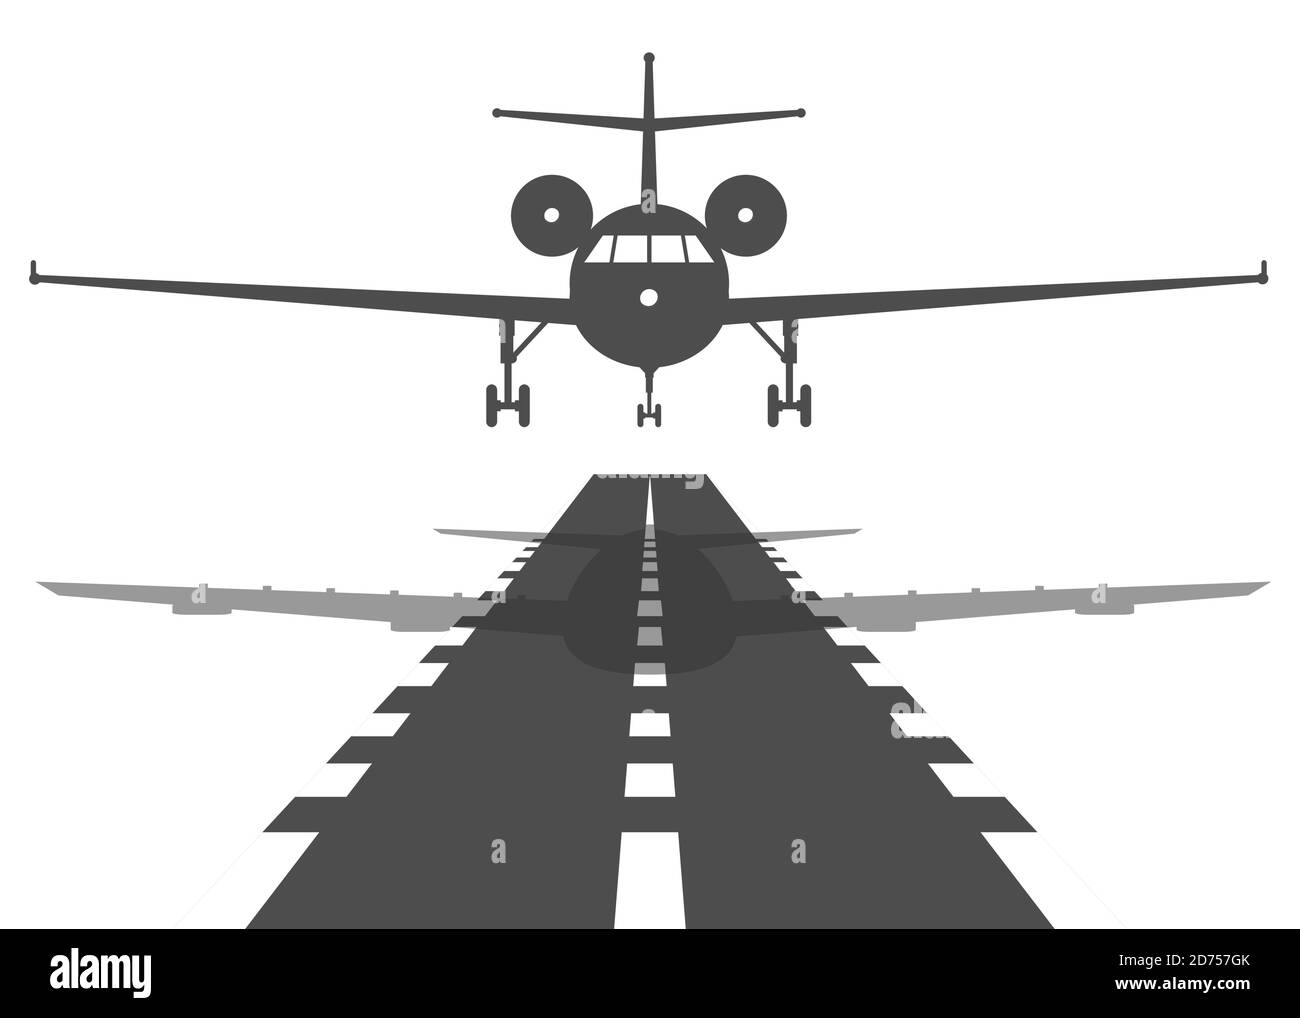 Passagierflugzeug fliegen oben über Start-Start-Start-Start-Bahn vom Flughafen. Flache Abbildung. Stock Vektor